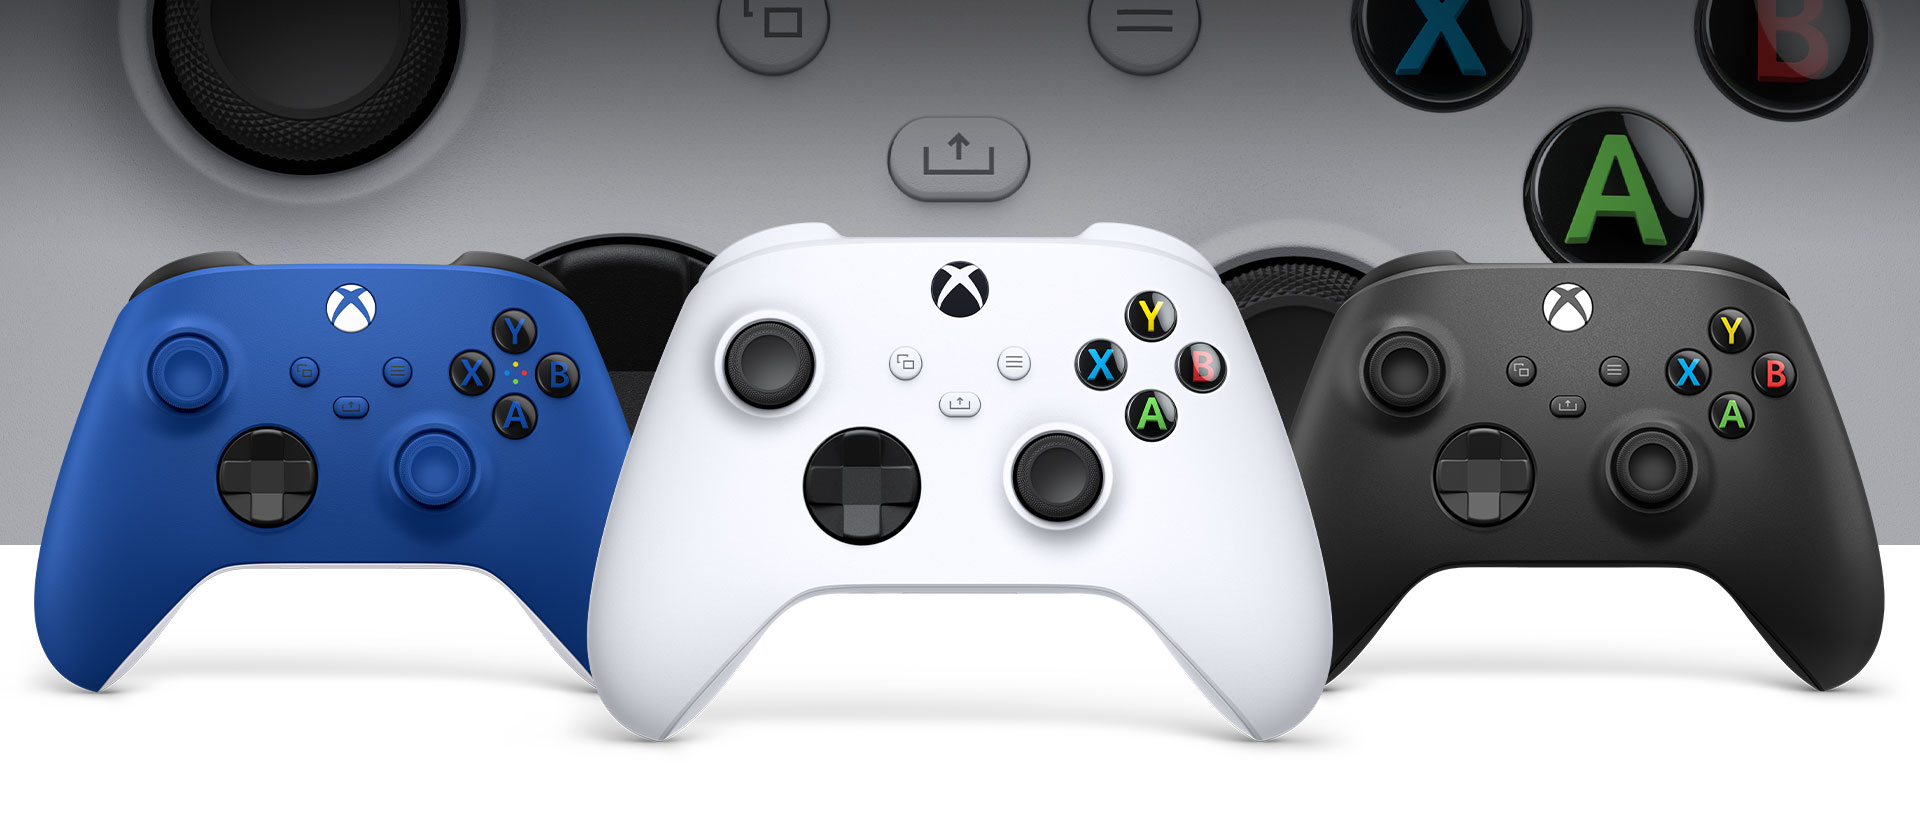 Control Xbox en blanco robot delante, con controles de color carbón y azul brillante al lado